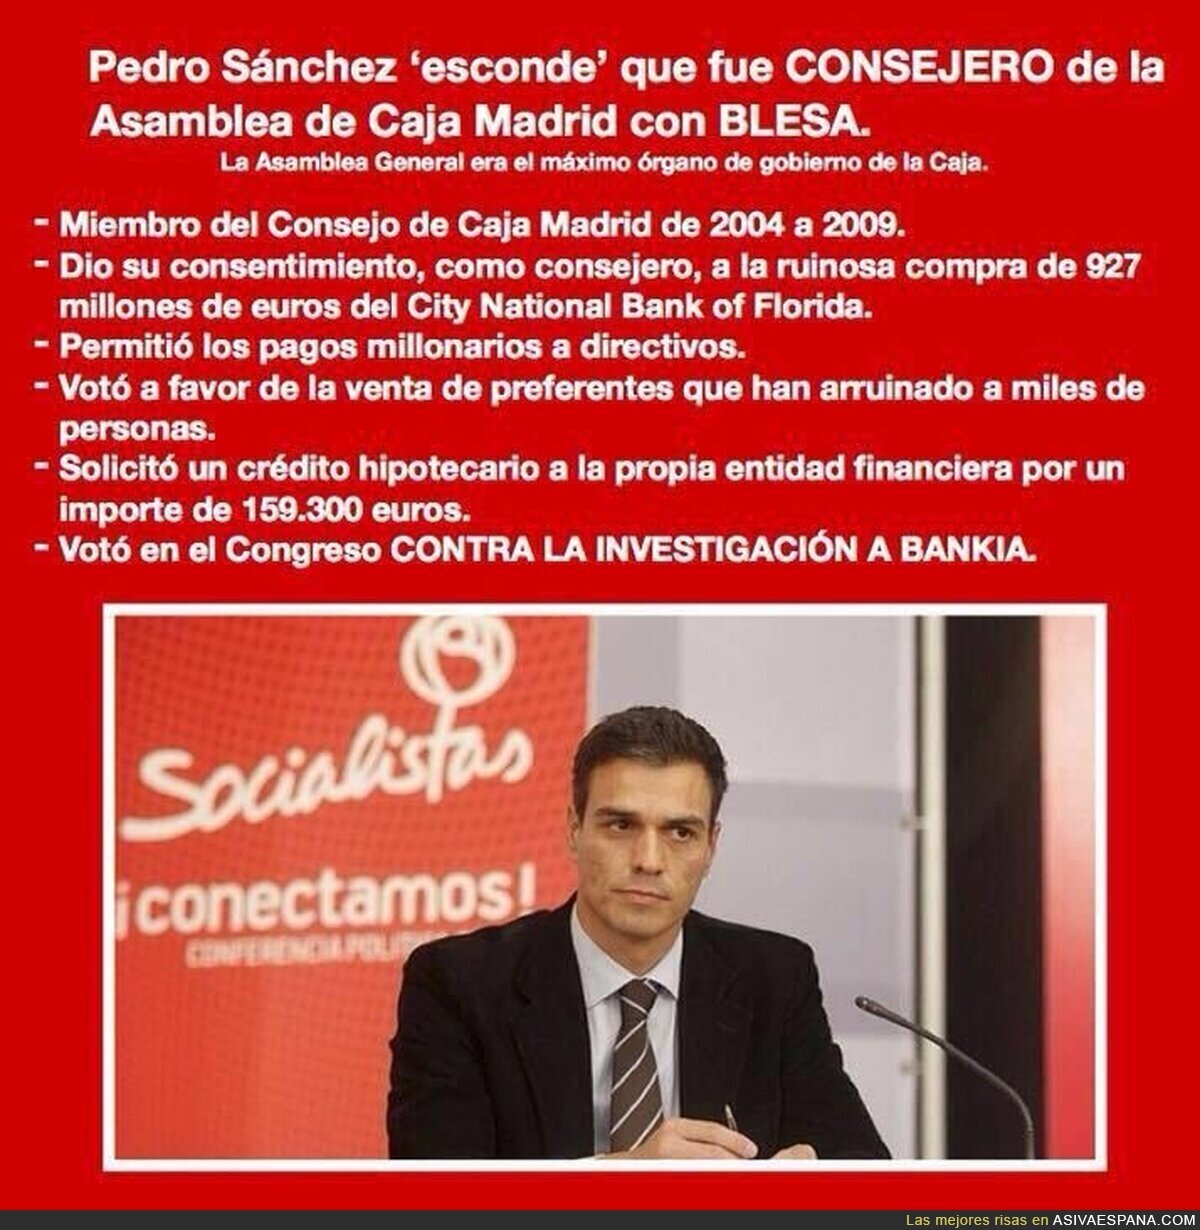 La gestión previa en Caja Madrid avala a Pedro Sánchez